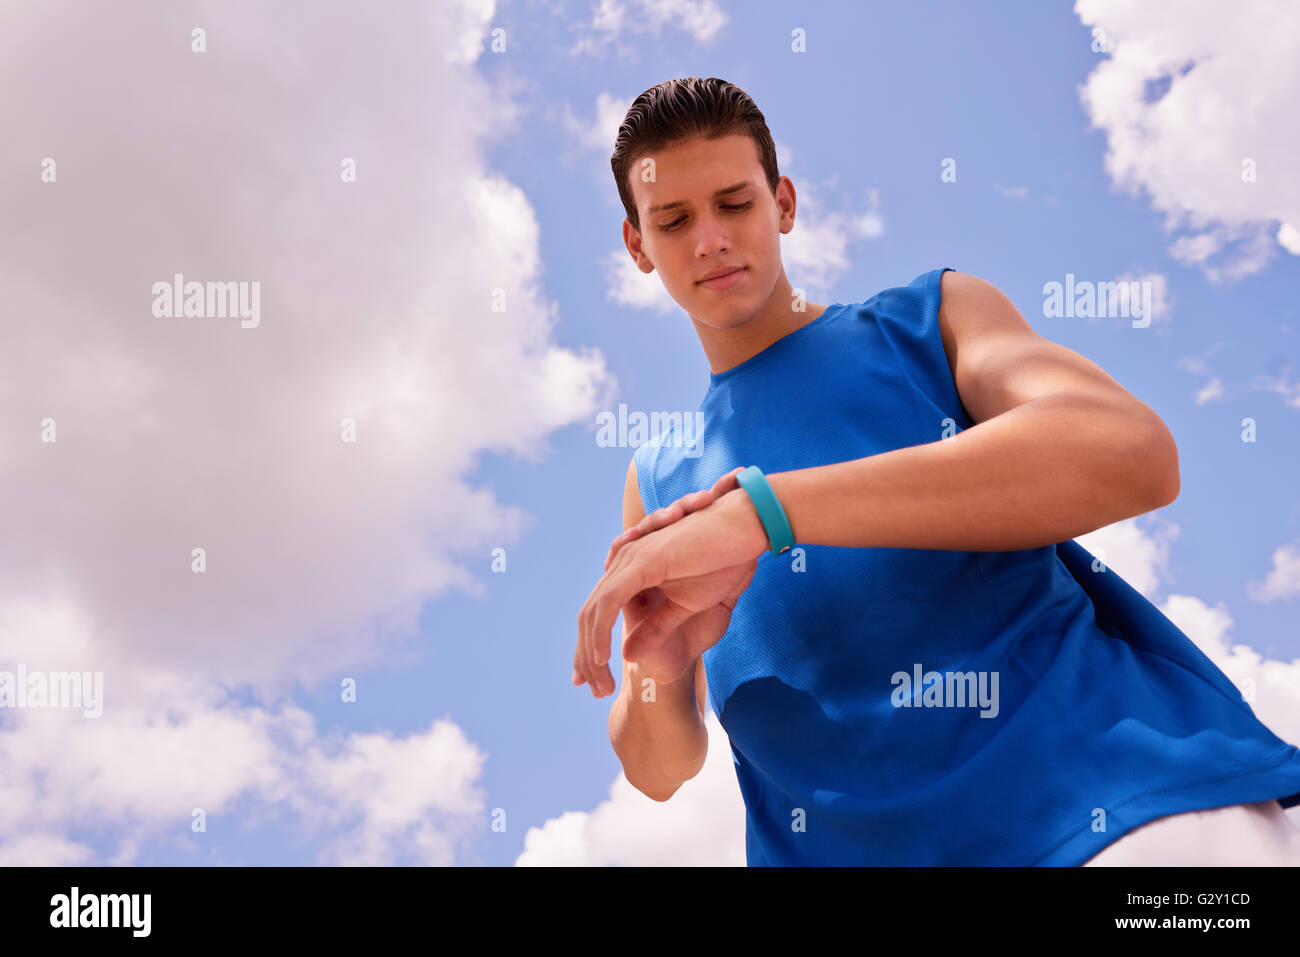 Des jeunes faisant du sport, jogging homme runner en utilisant fit watch. Concept de loisirs, santé, loisirs, fitness, lifest Banque D'Images